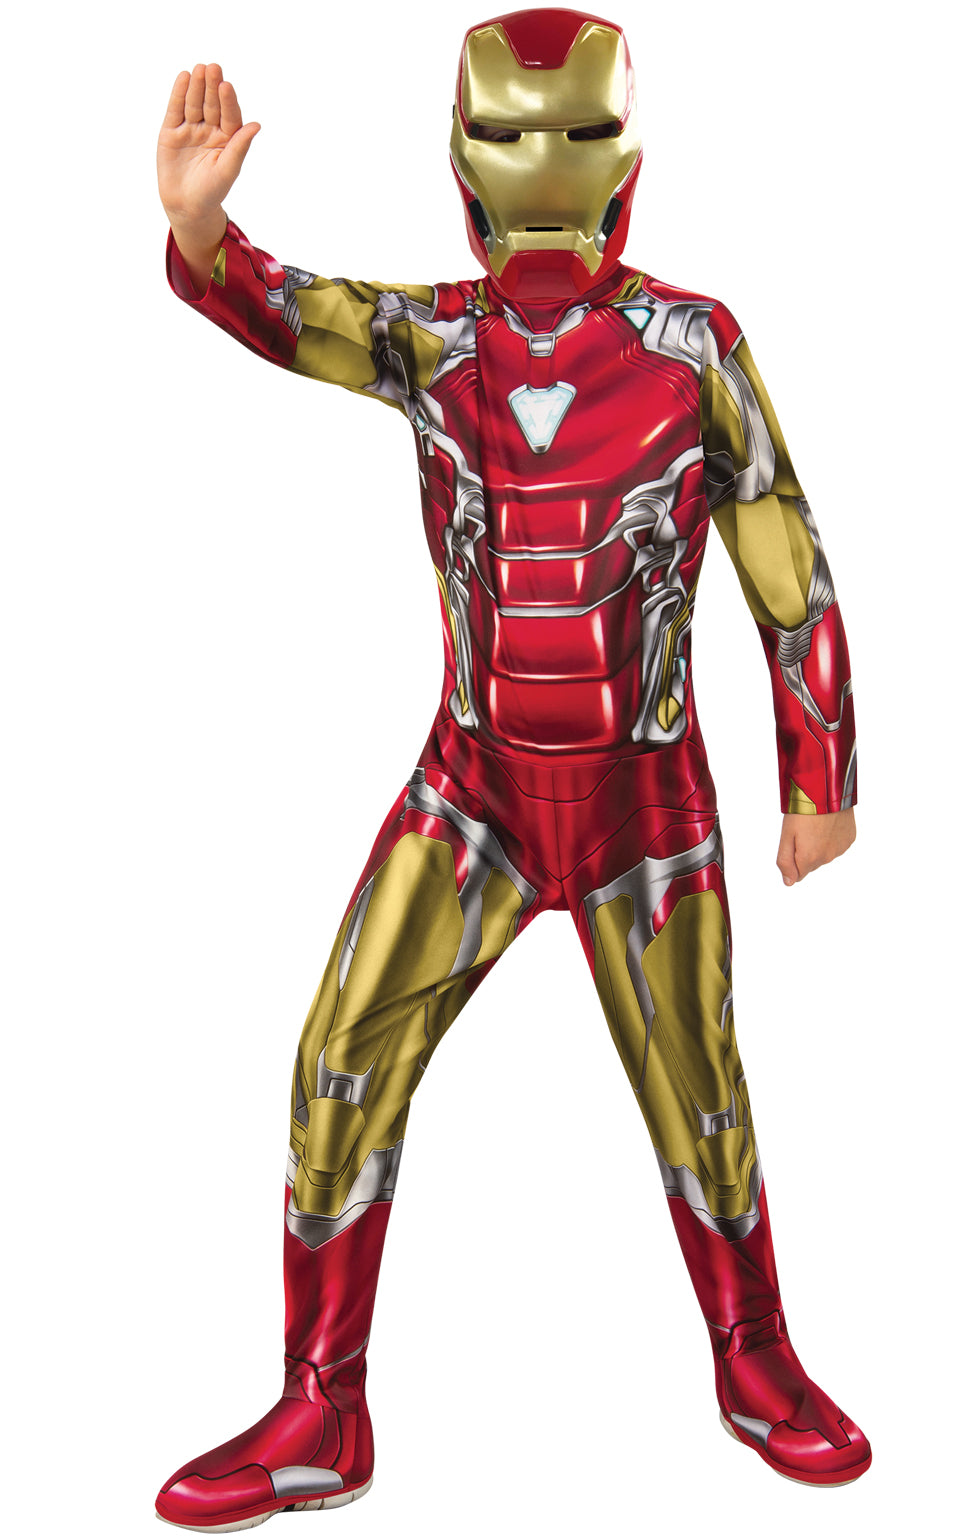 Licensed Marvel Avengers Kids Fancy Dress Superhero Costumes